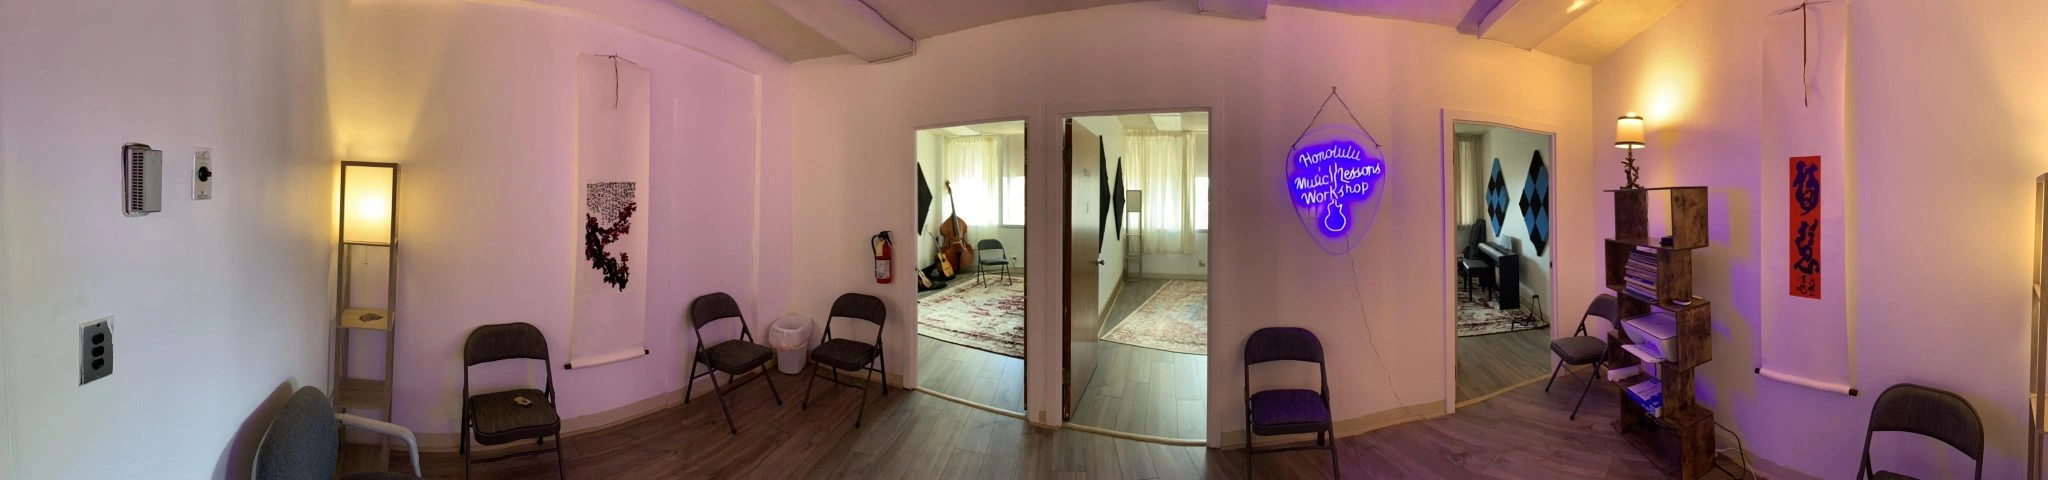 Practice Room